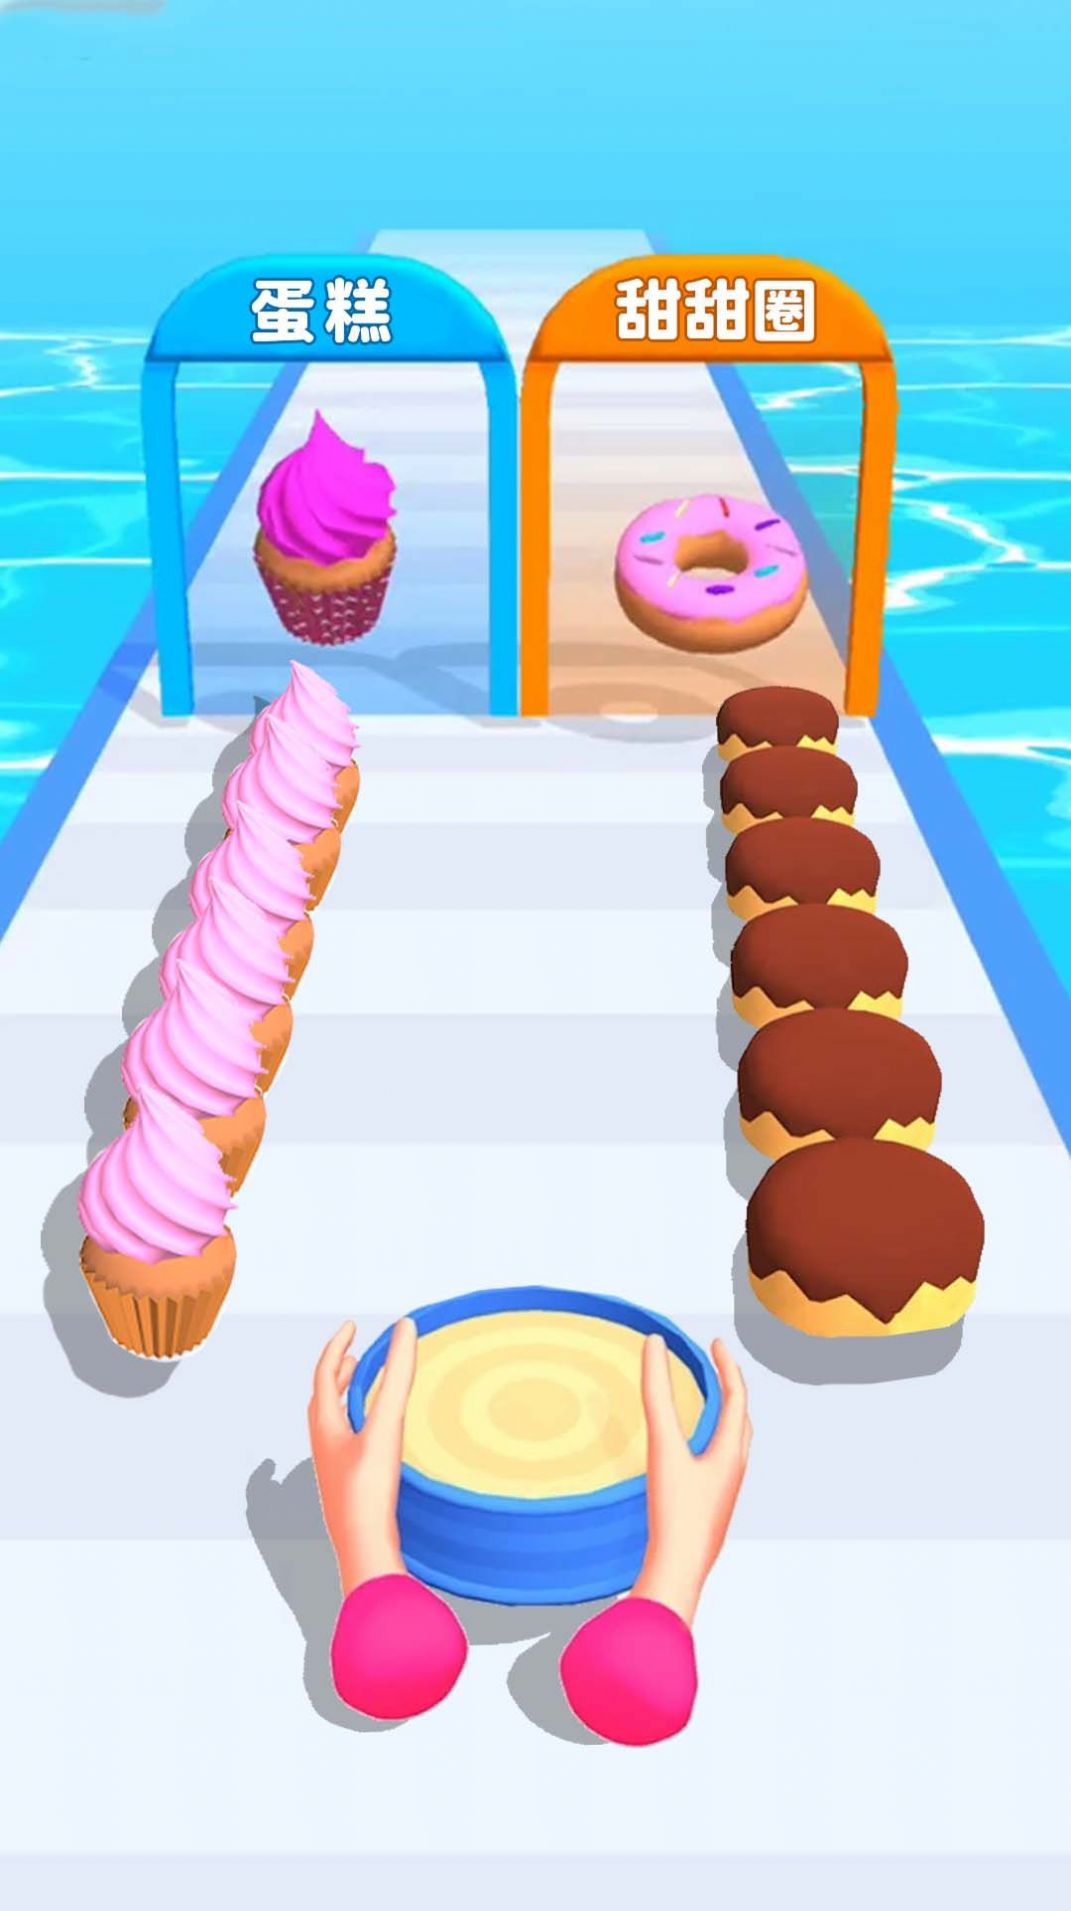 一起做甜品吧游戏官方版图片1